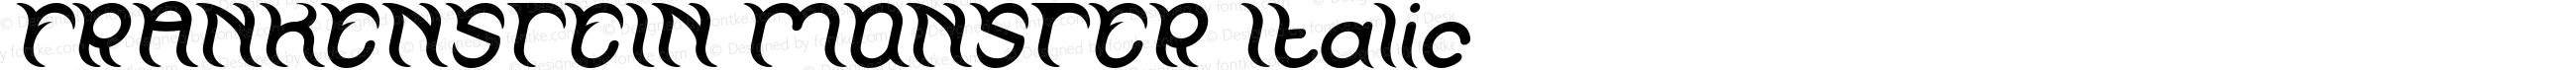 FRANKENSTEIN MONSTER Italic